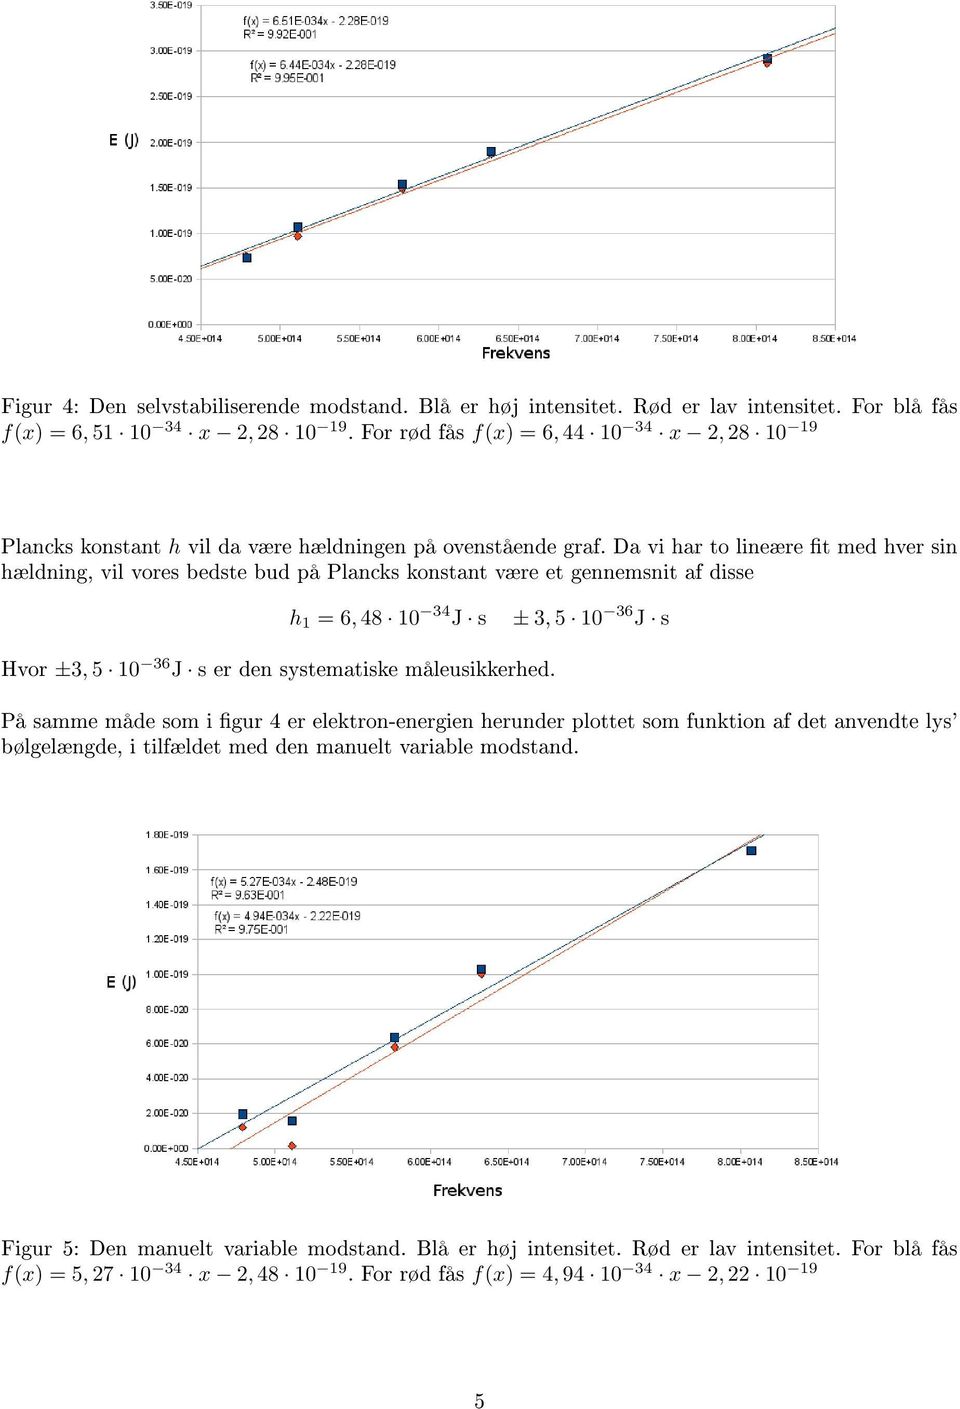 Da vi har to lineære t med hver sin hældning, vil vores bedste bud på Plancks konstant være et gennemsnit af disse h = 6, 48 0 34 J s ± 3, 5 0 36 J s Hvor ±3, 5 0 36 J s er den systematiske